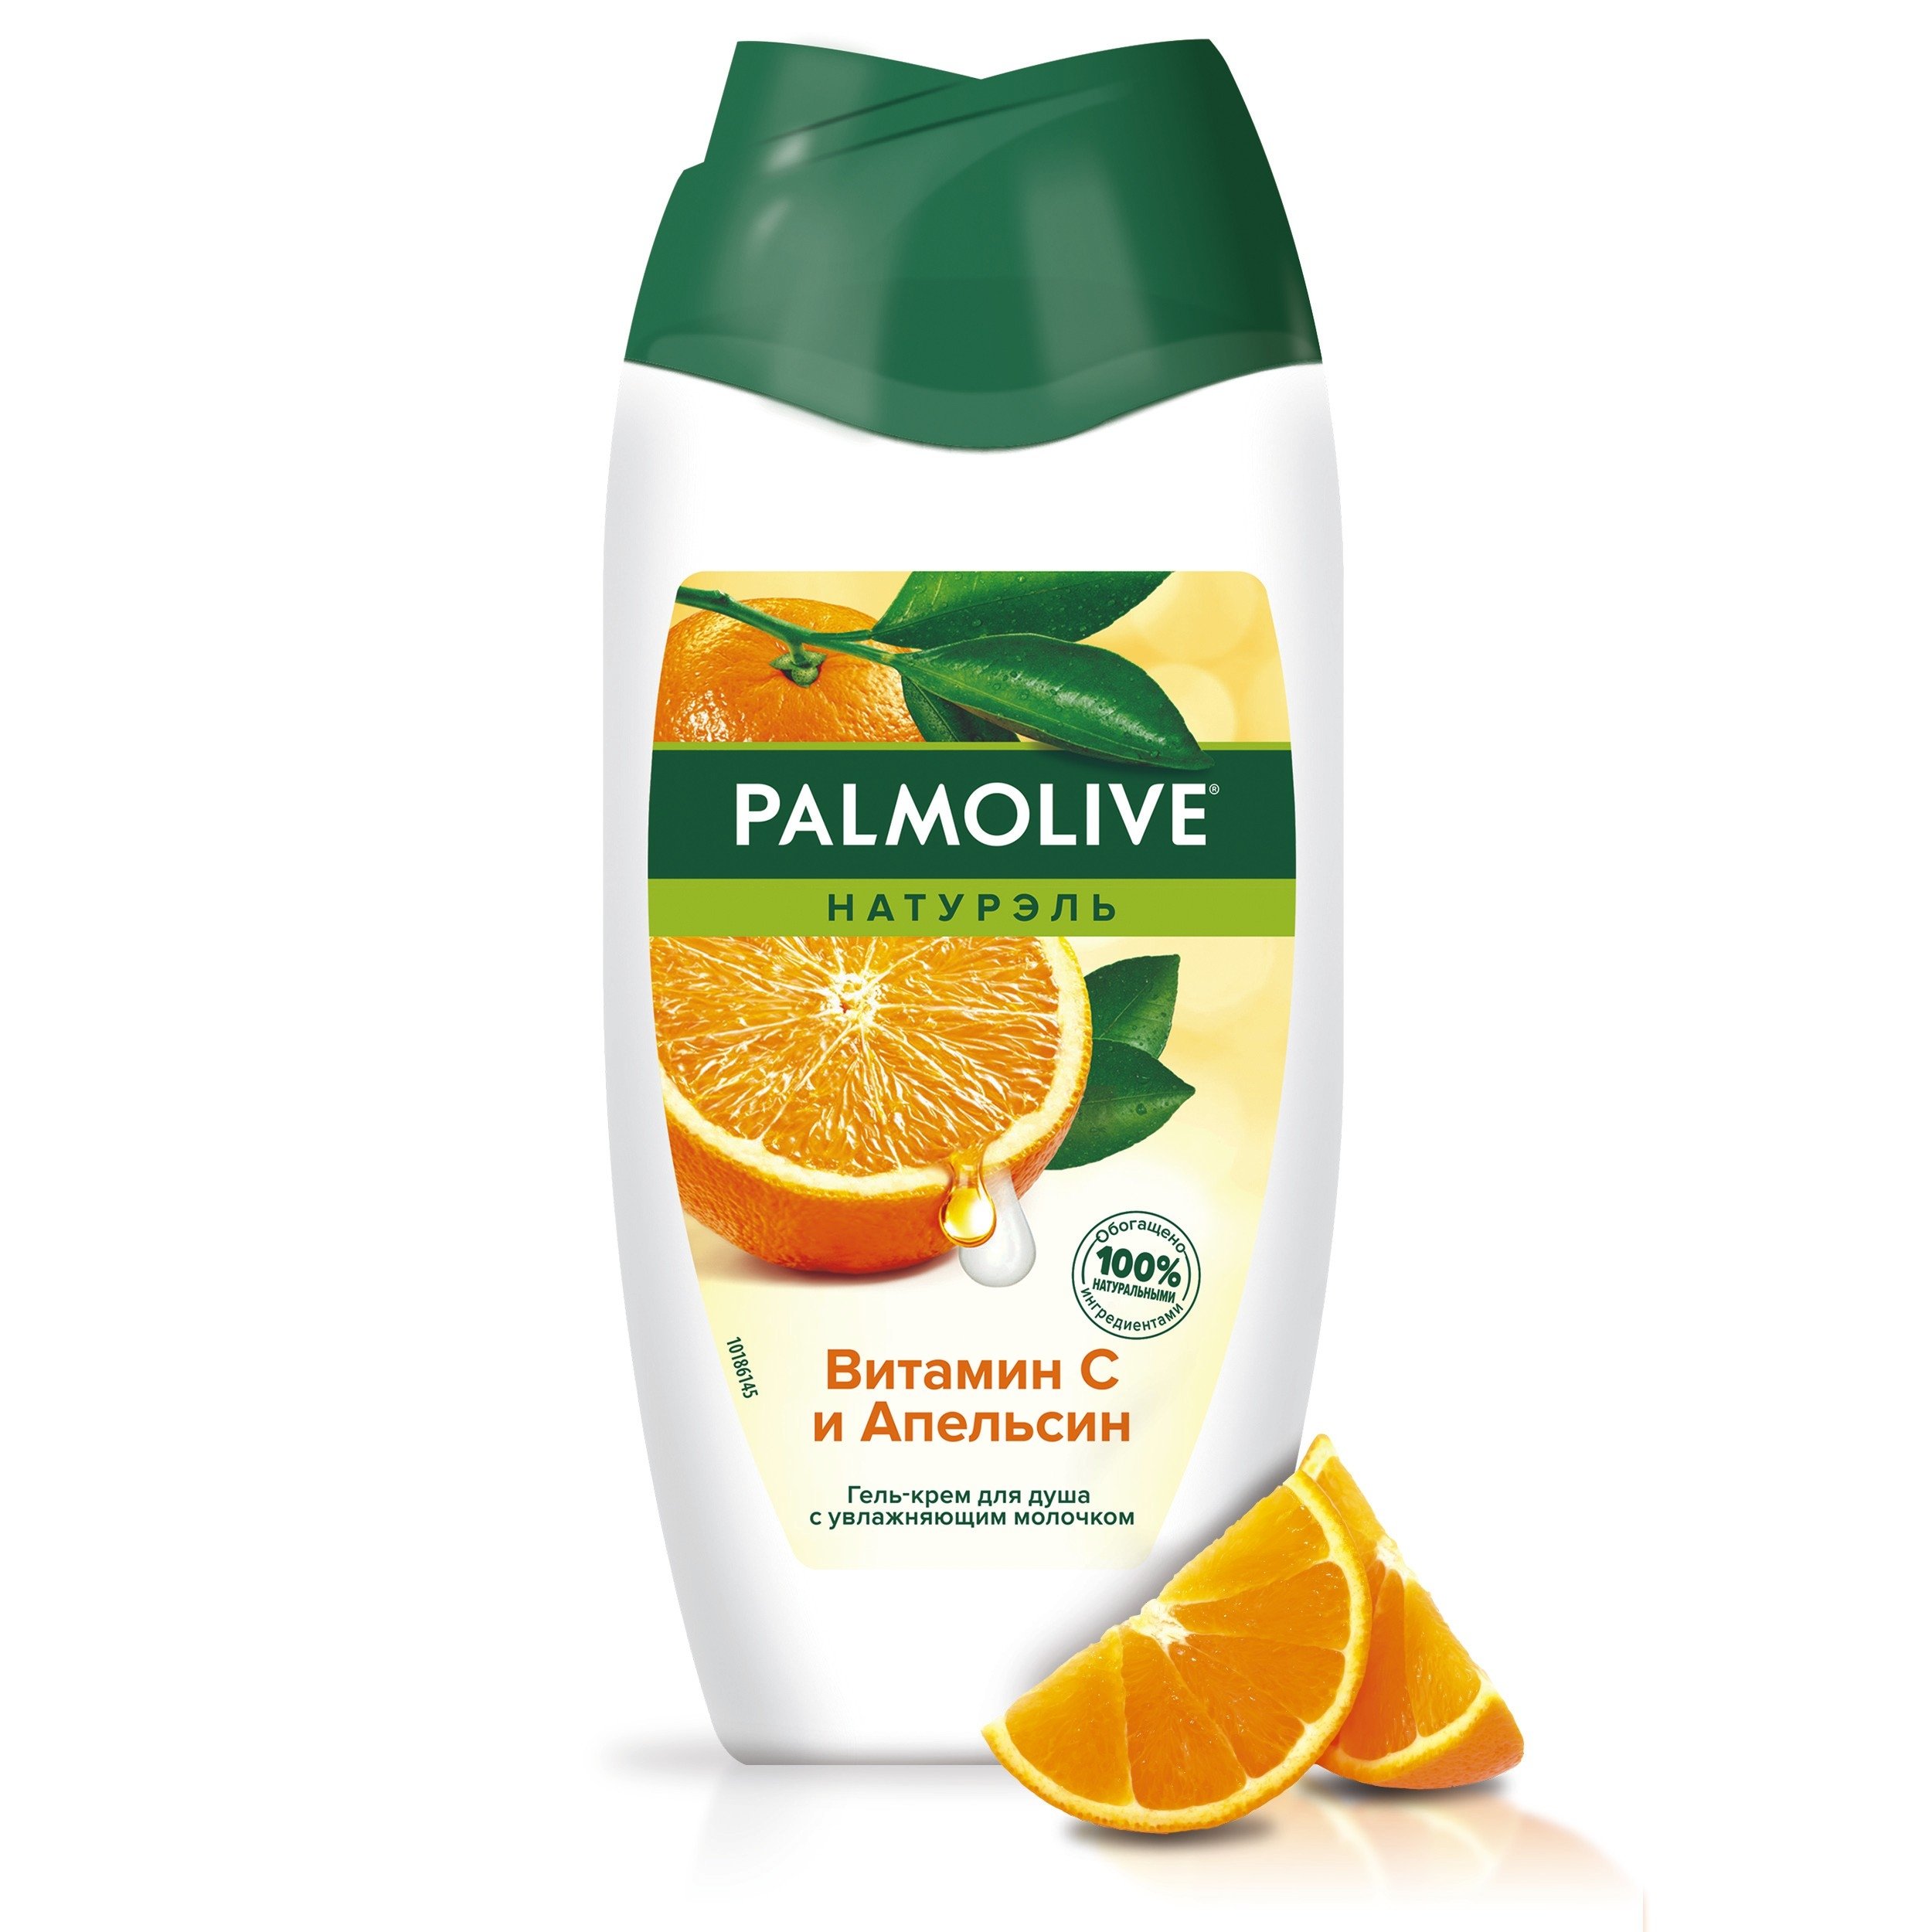 Гель-крем для душа Palmolive Натурэль Витамин С и Апельсин, 250 мл - фото 1